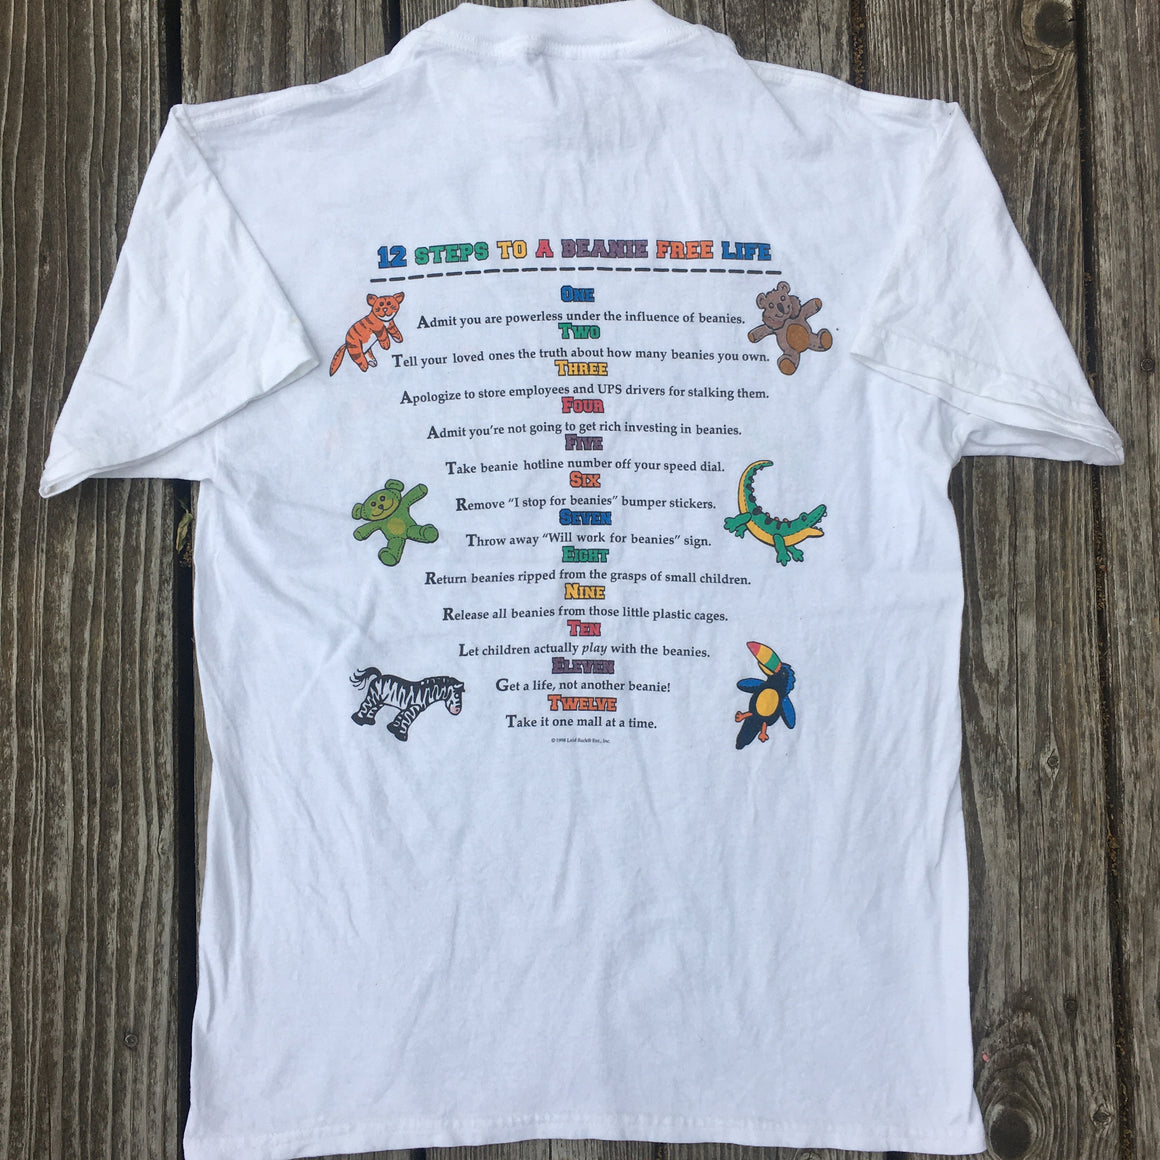 1998 Beanie Babies shirt - M